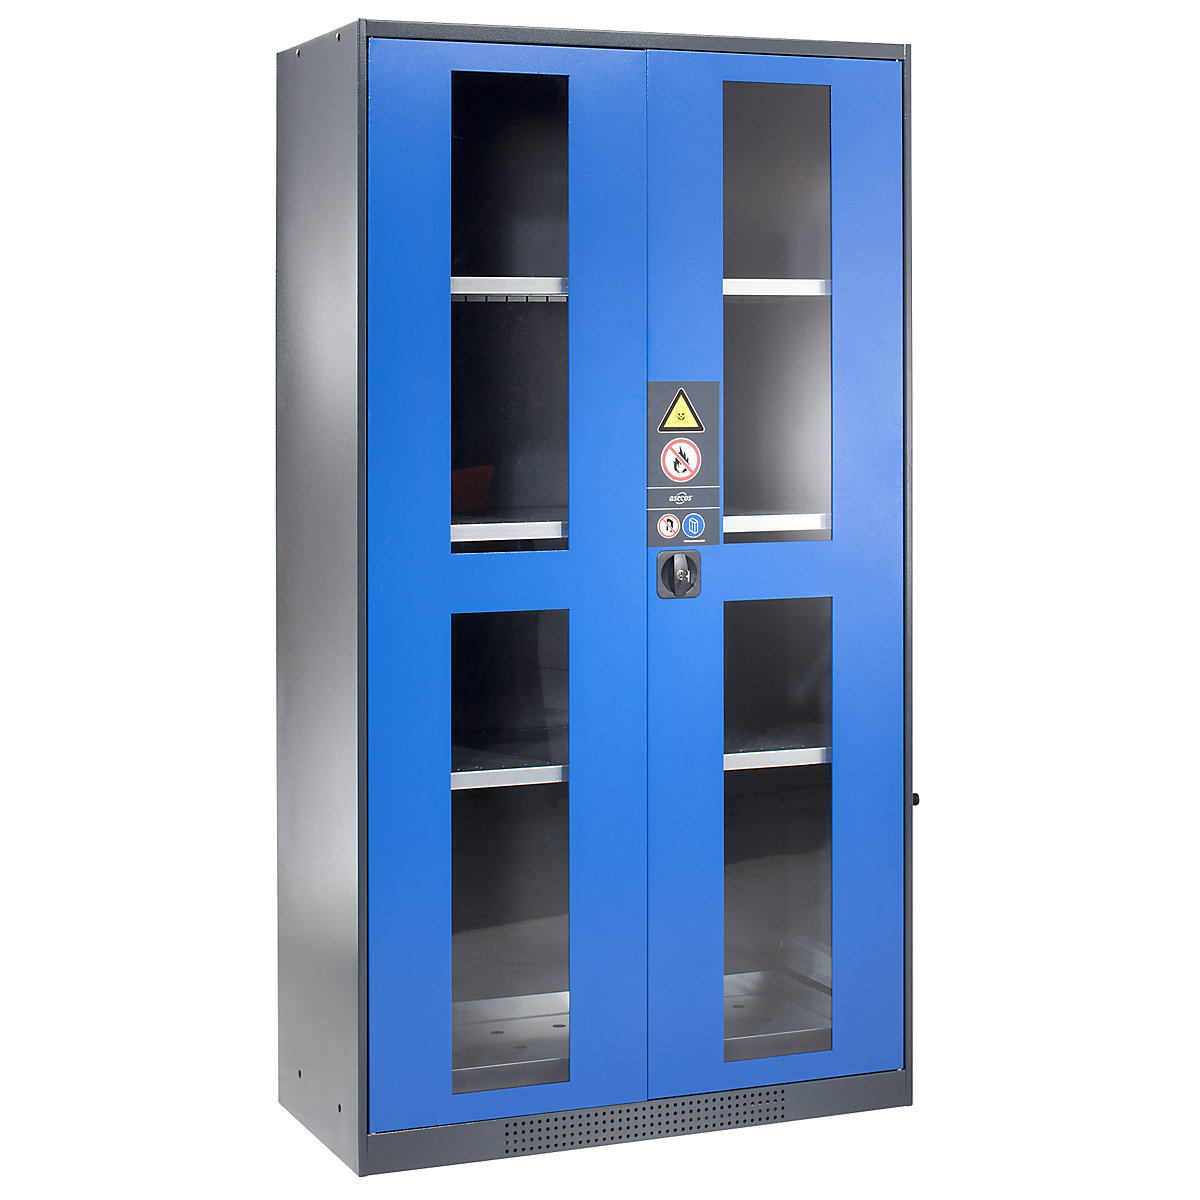 asecos – Armoire pour produits chimiques, porte vitrée, sans coffre pour produits dangereux, coloris portes bleu gentiane RAL 5010